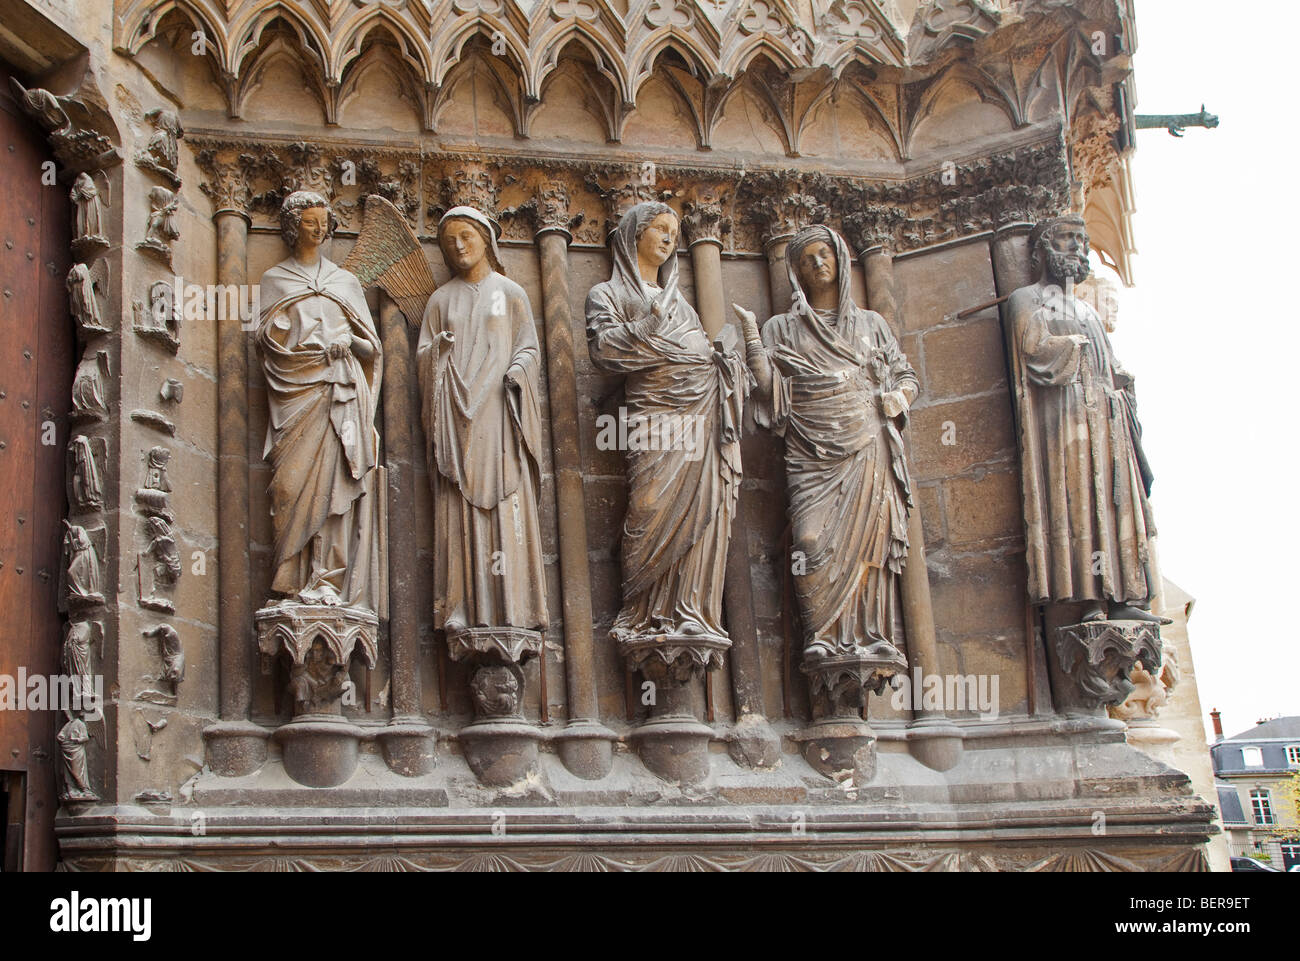 La Cathédrale de Reims (Cathédrale de Reims) les détails de la sculpture en Champagne Ardenne Region France.098613 Reims Banque D'Images